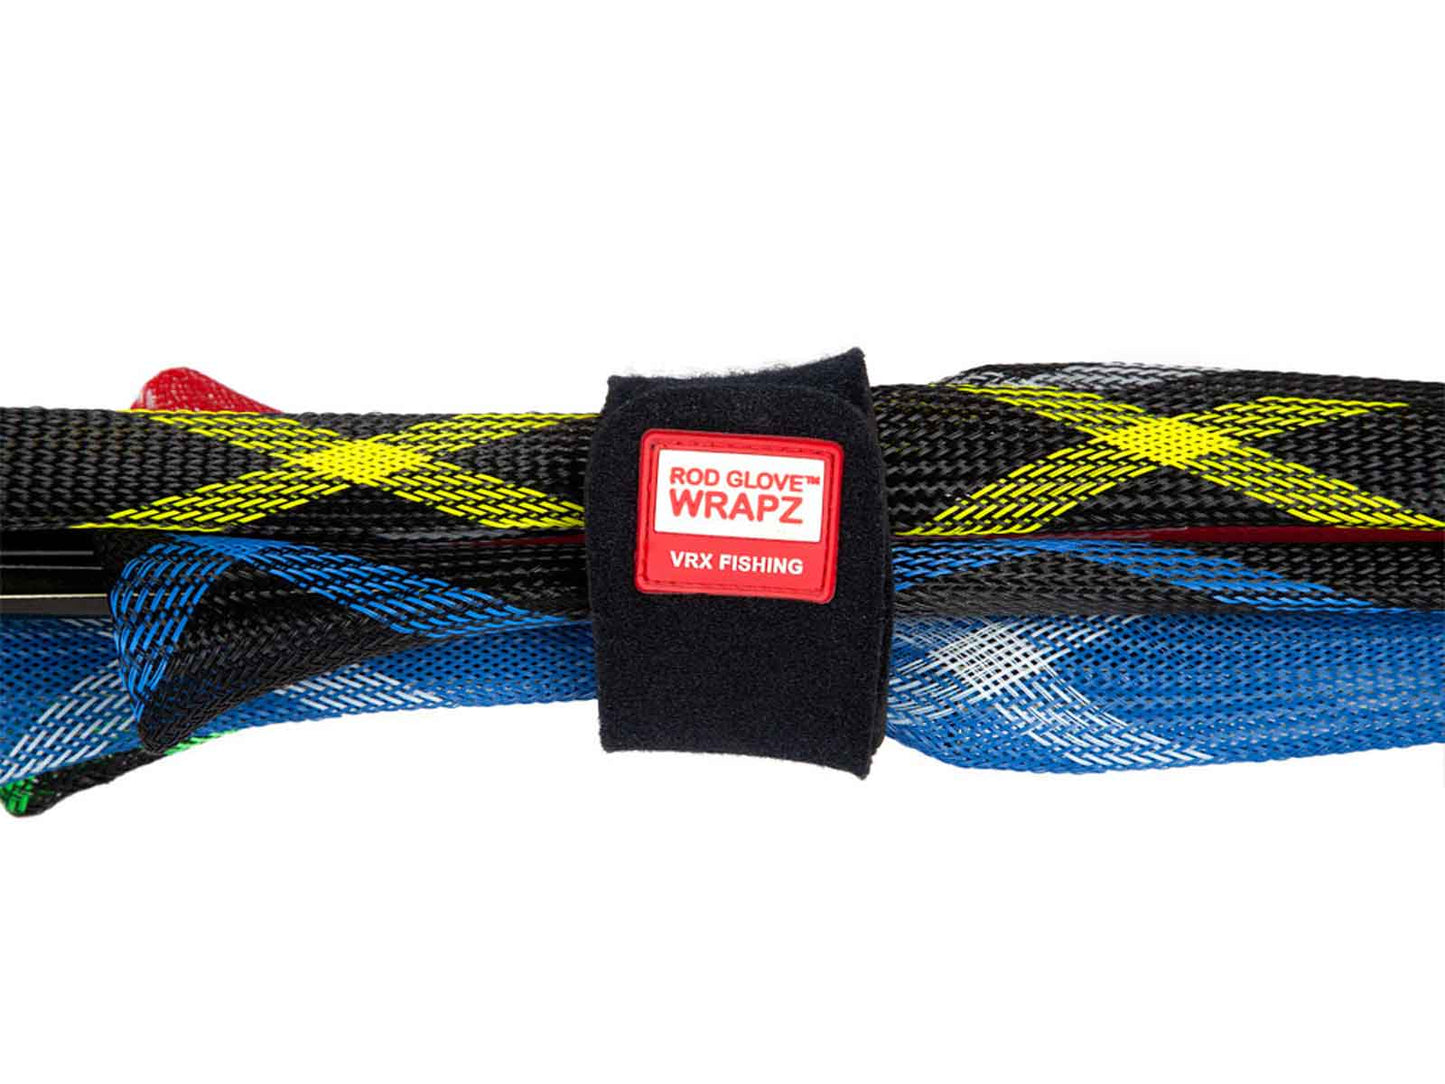 Rod Glove Wrapz – The Rod Glove